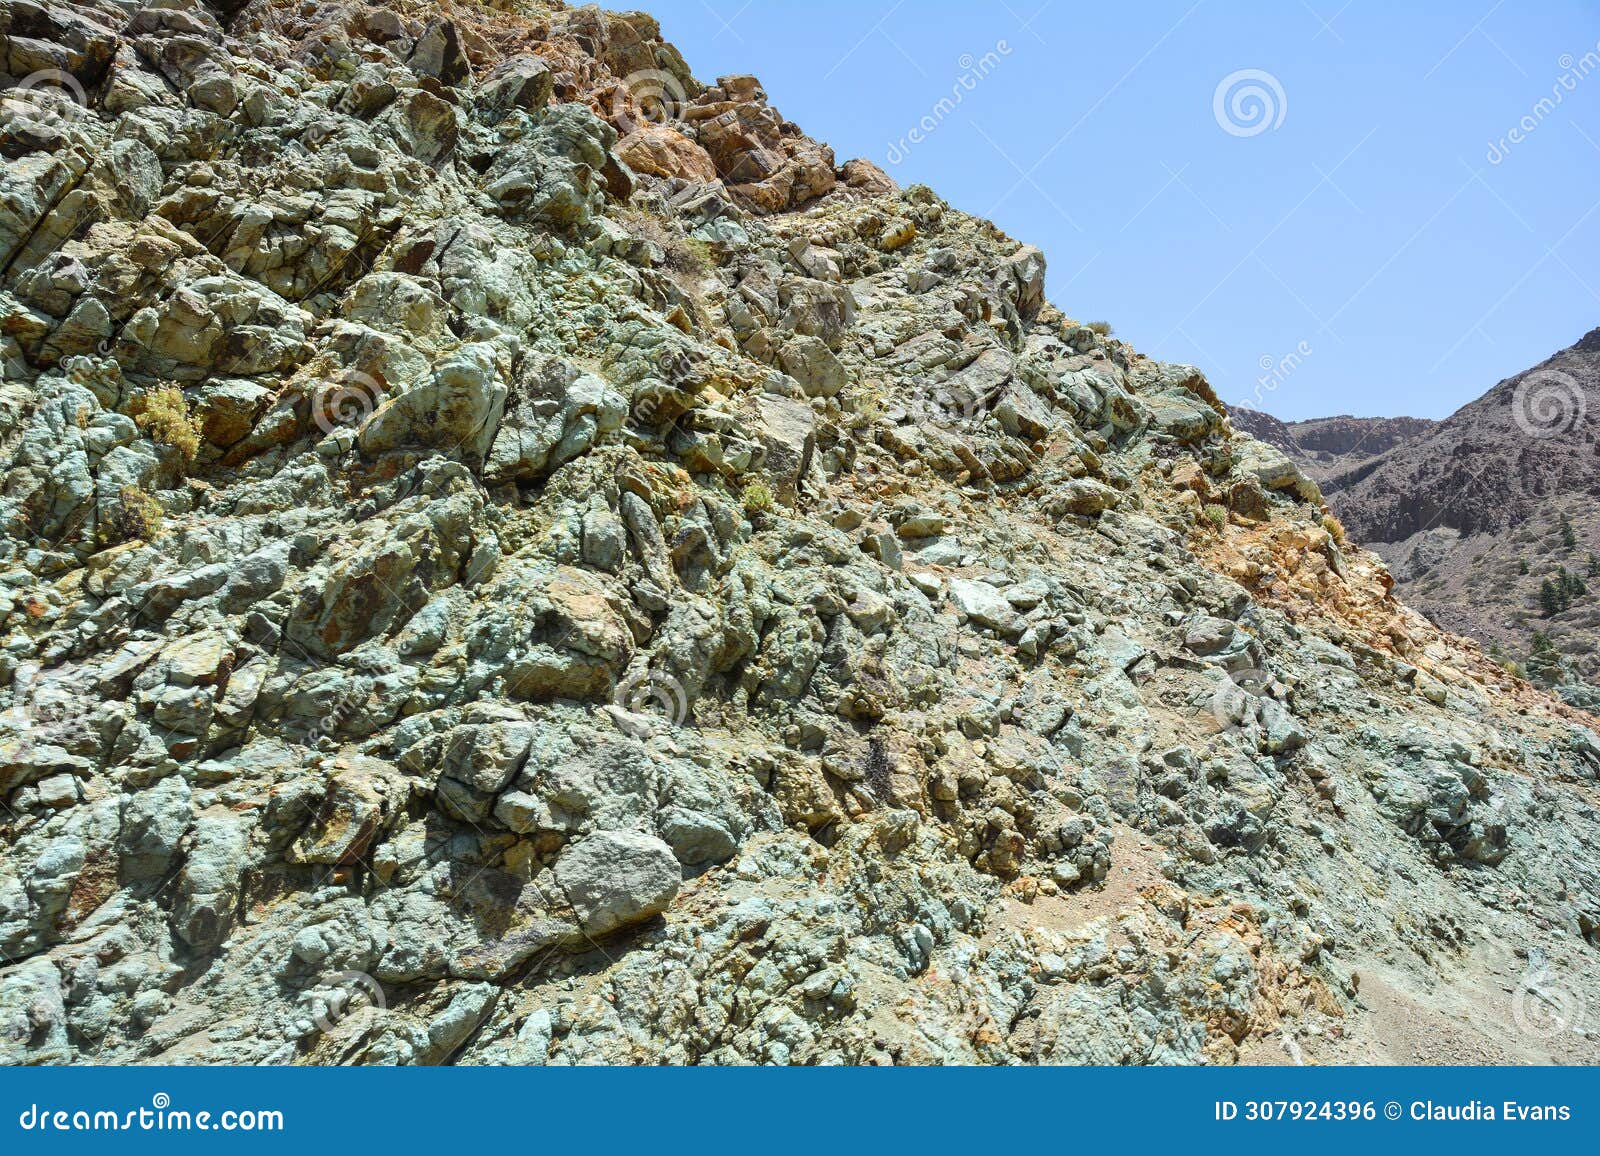 green rocks in el teide national park in tenerife, spain